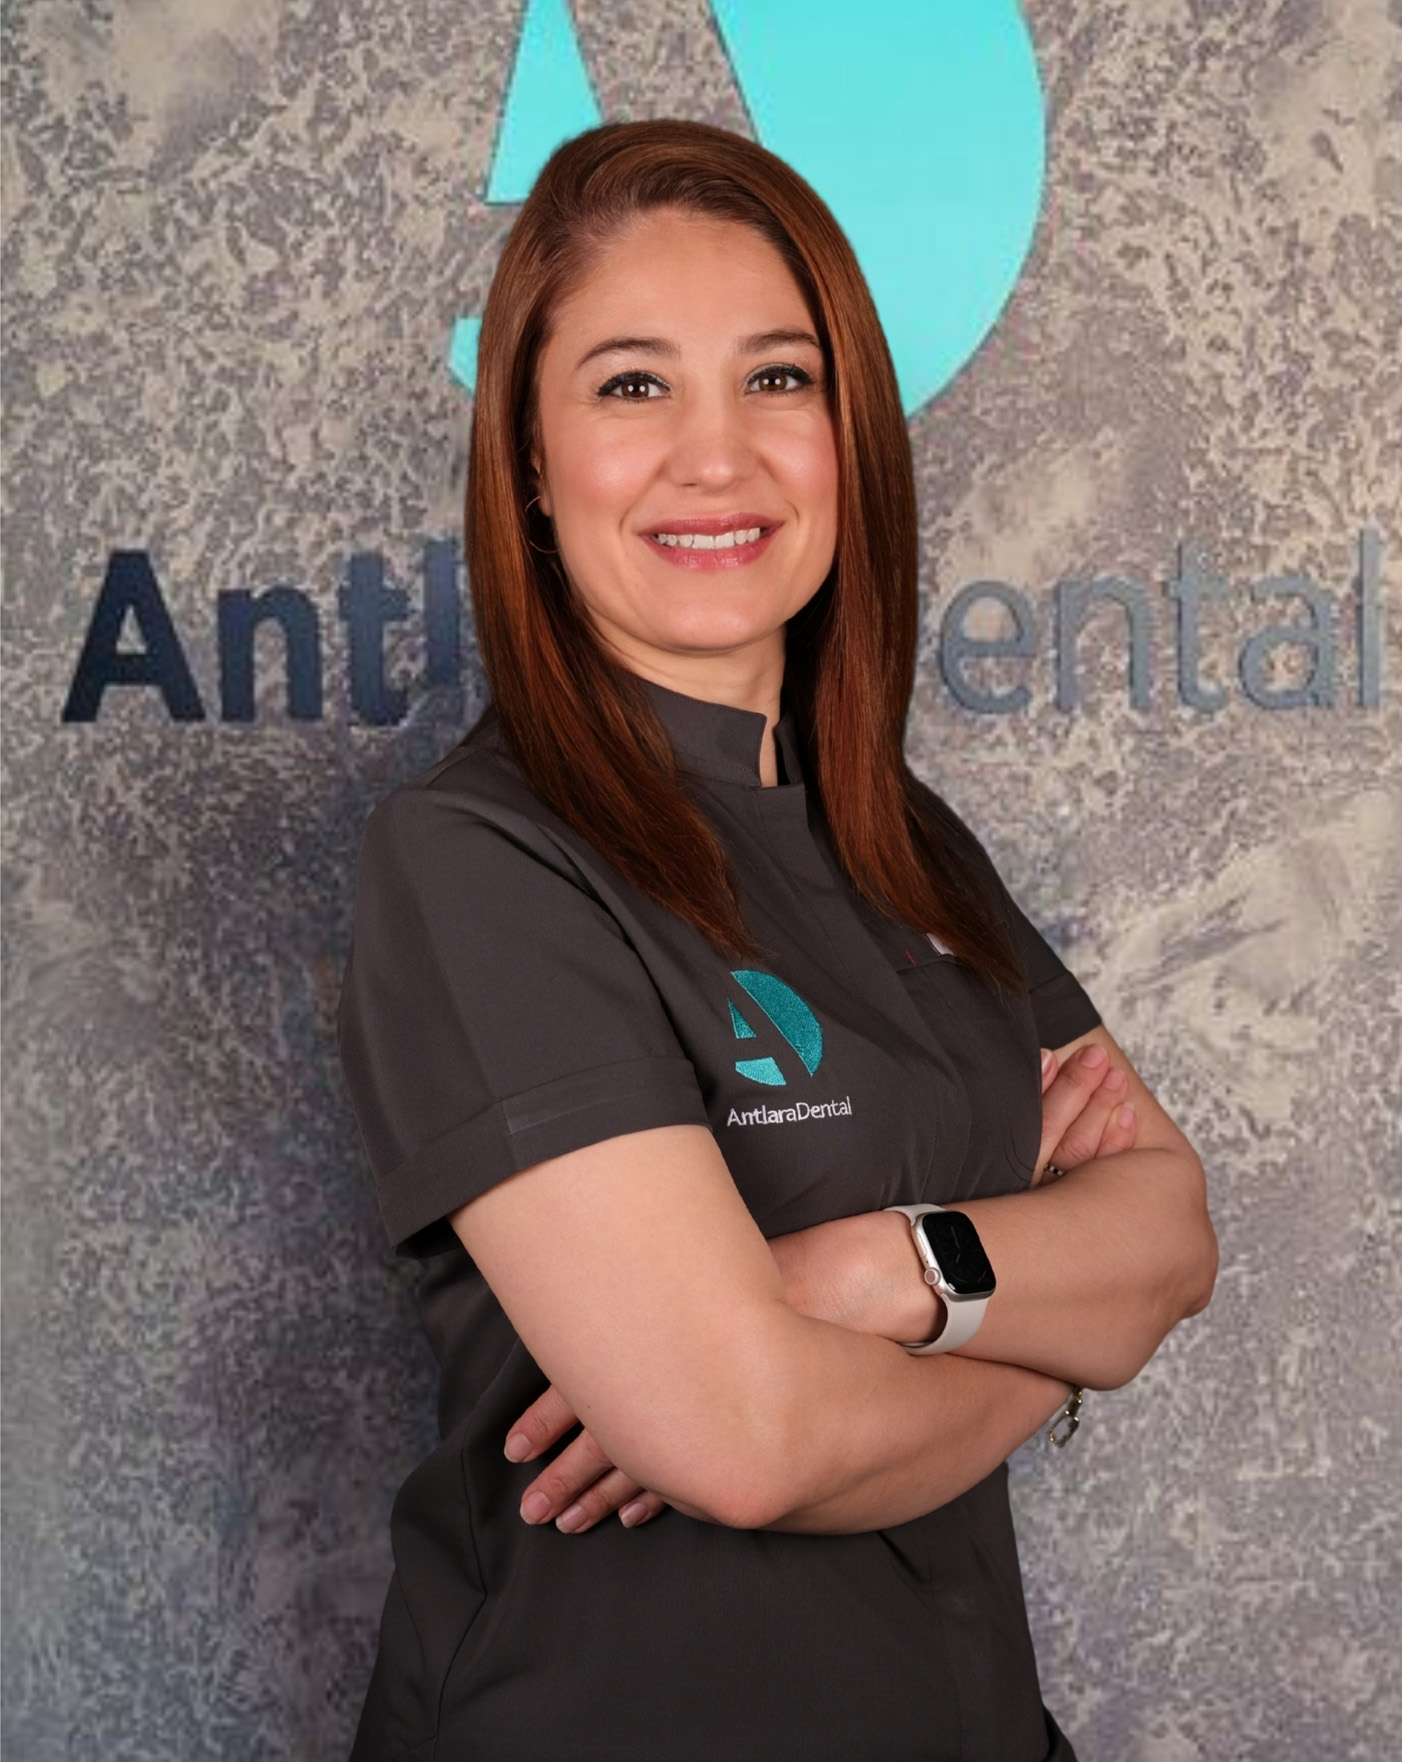 Dt. Dilek Aksu Güler, implantoloji, dijital gülüş tasarımı, kozmetik diş hekimliği, Ağız ve Diş Sağlığı Polikliği Antalya